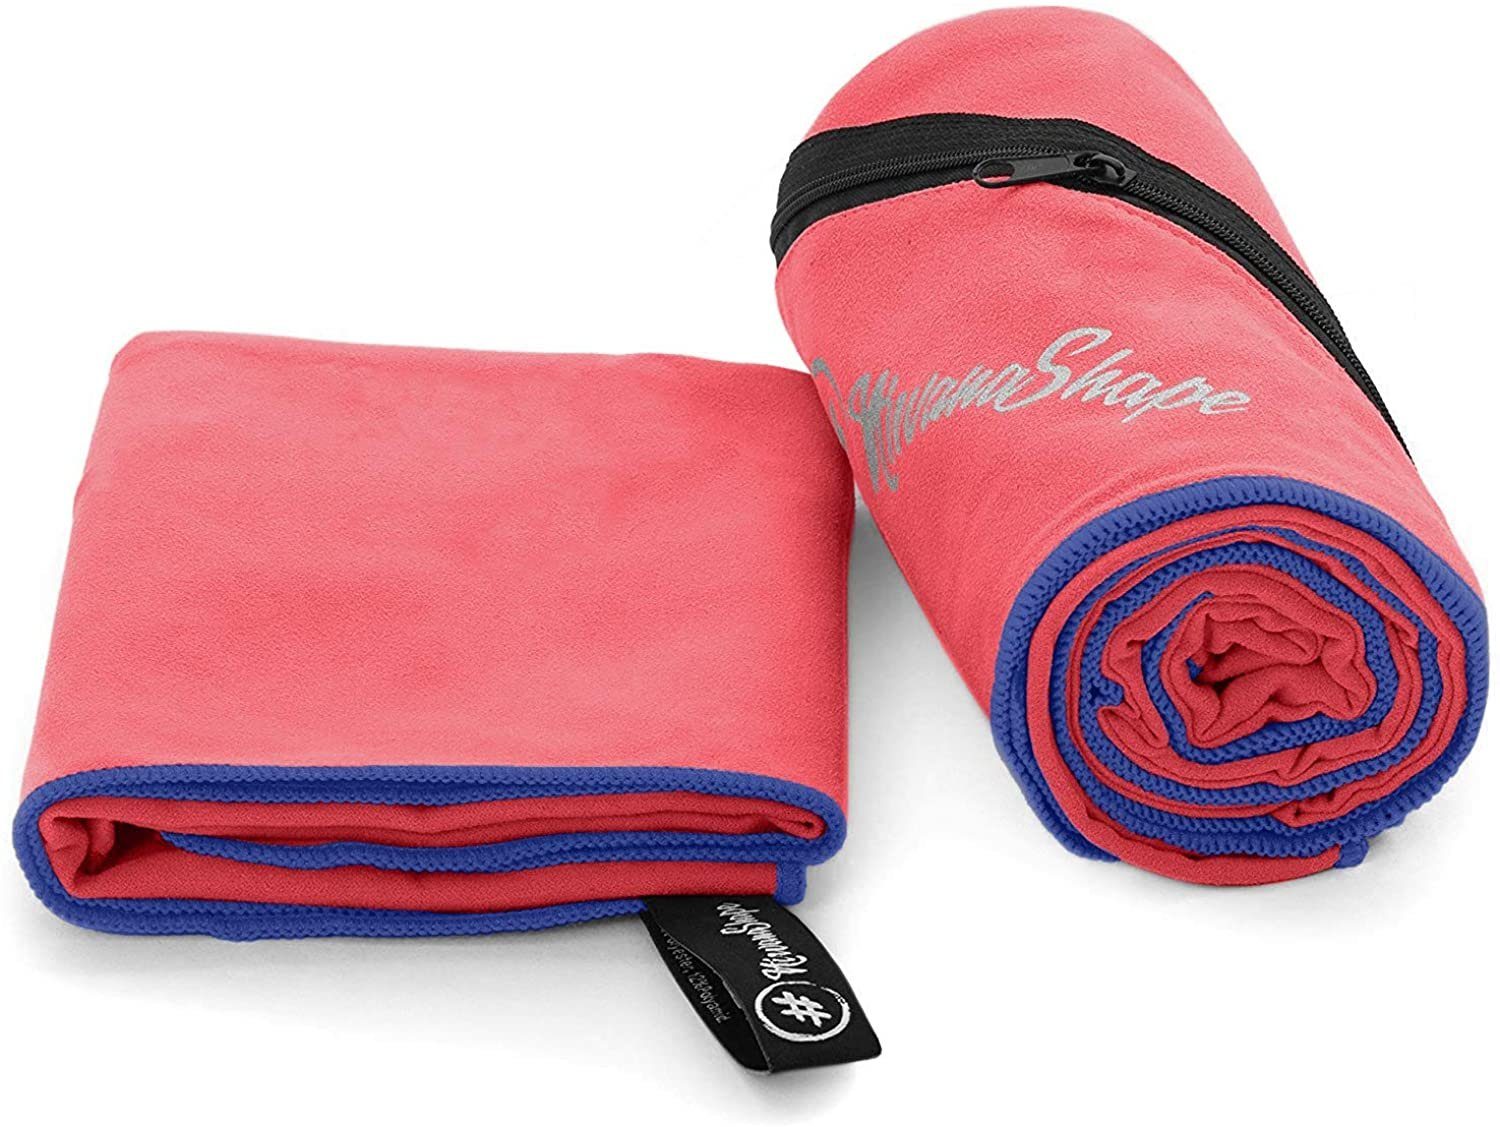 NirvanaShape Sporthandtuch Mikrofaser Handtuch, Badehandtuch, Reisehandtuch, Sporthandtuch, Ecktasche mit Reißverschluss, saugfähig, leicht, schnelltrocknend Rot / Blauer Rand